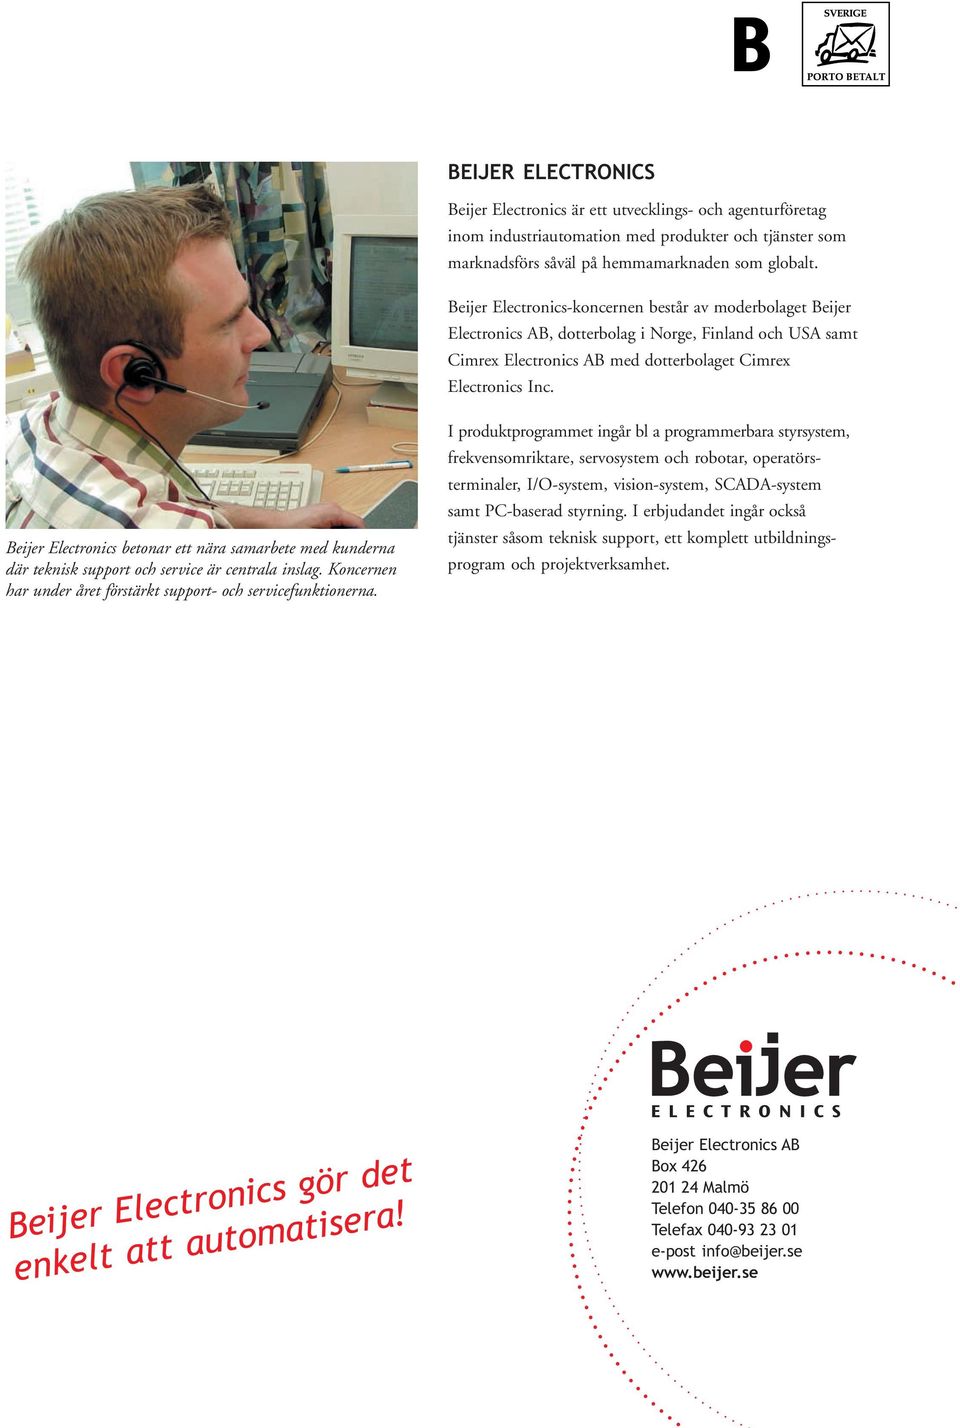 Beijer Electronics betonar ett nära samarbete med kunderna där teknisk support och service är centrala inslag. Koncernen har under året förstärkt support- och servicefunktionerna.